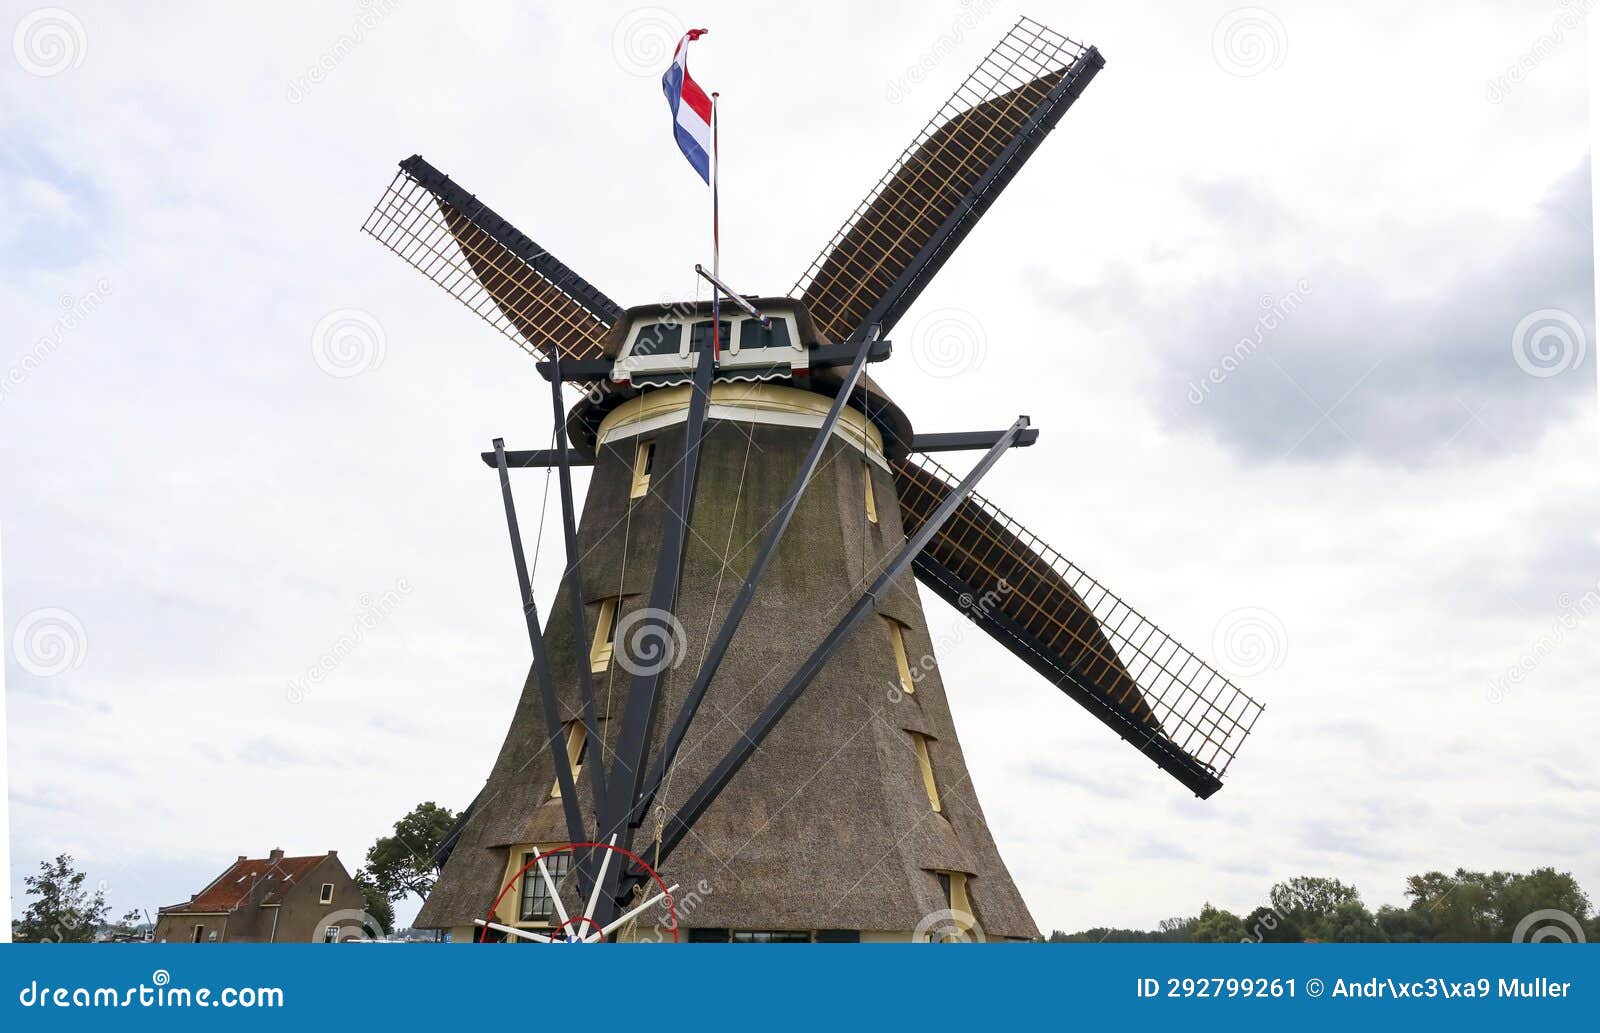 official commissioning of eendrachtmolen windmill after extensive renovation in zevenhuizen